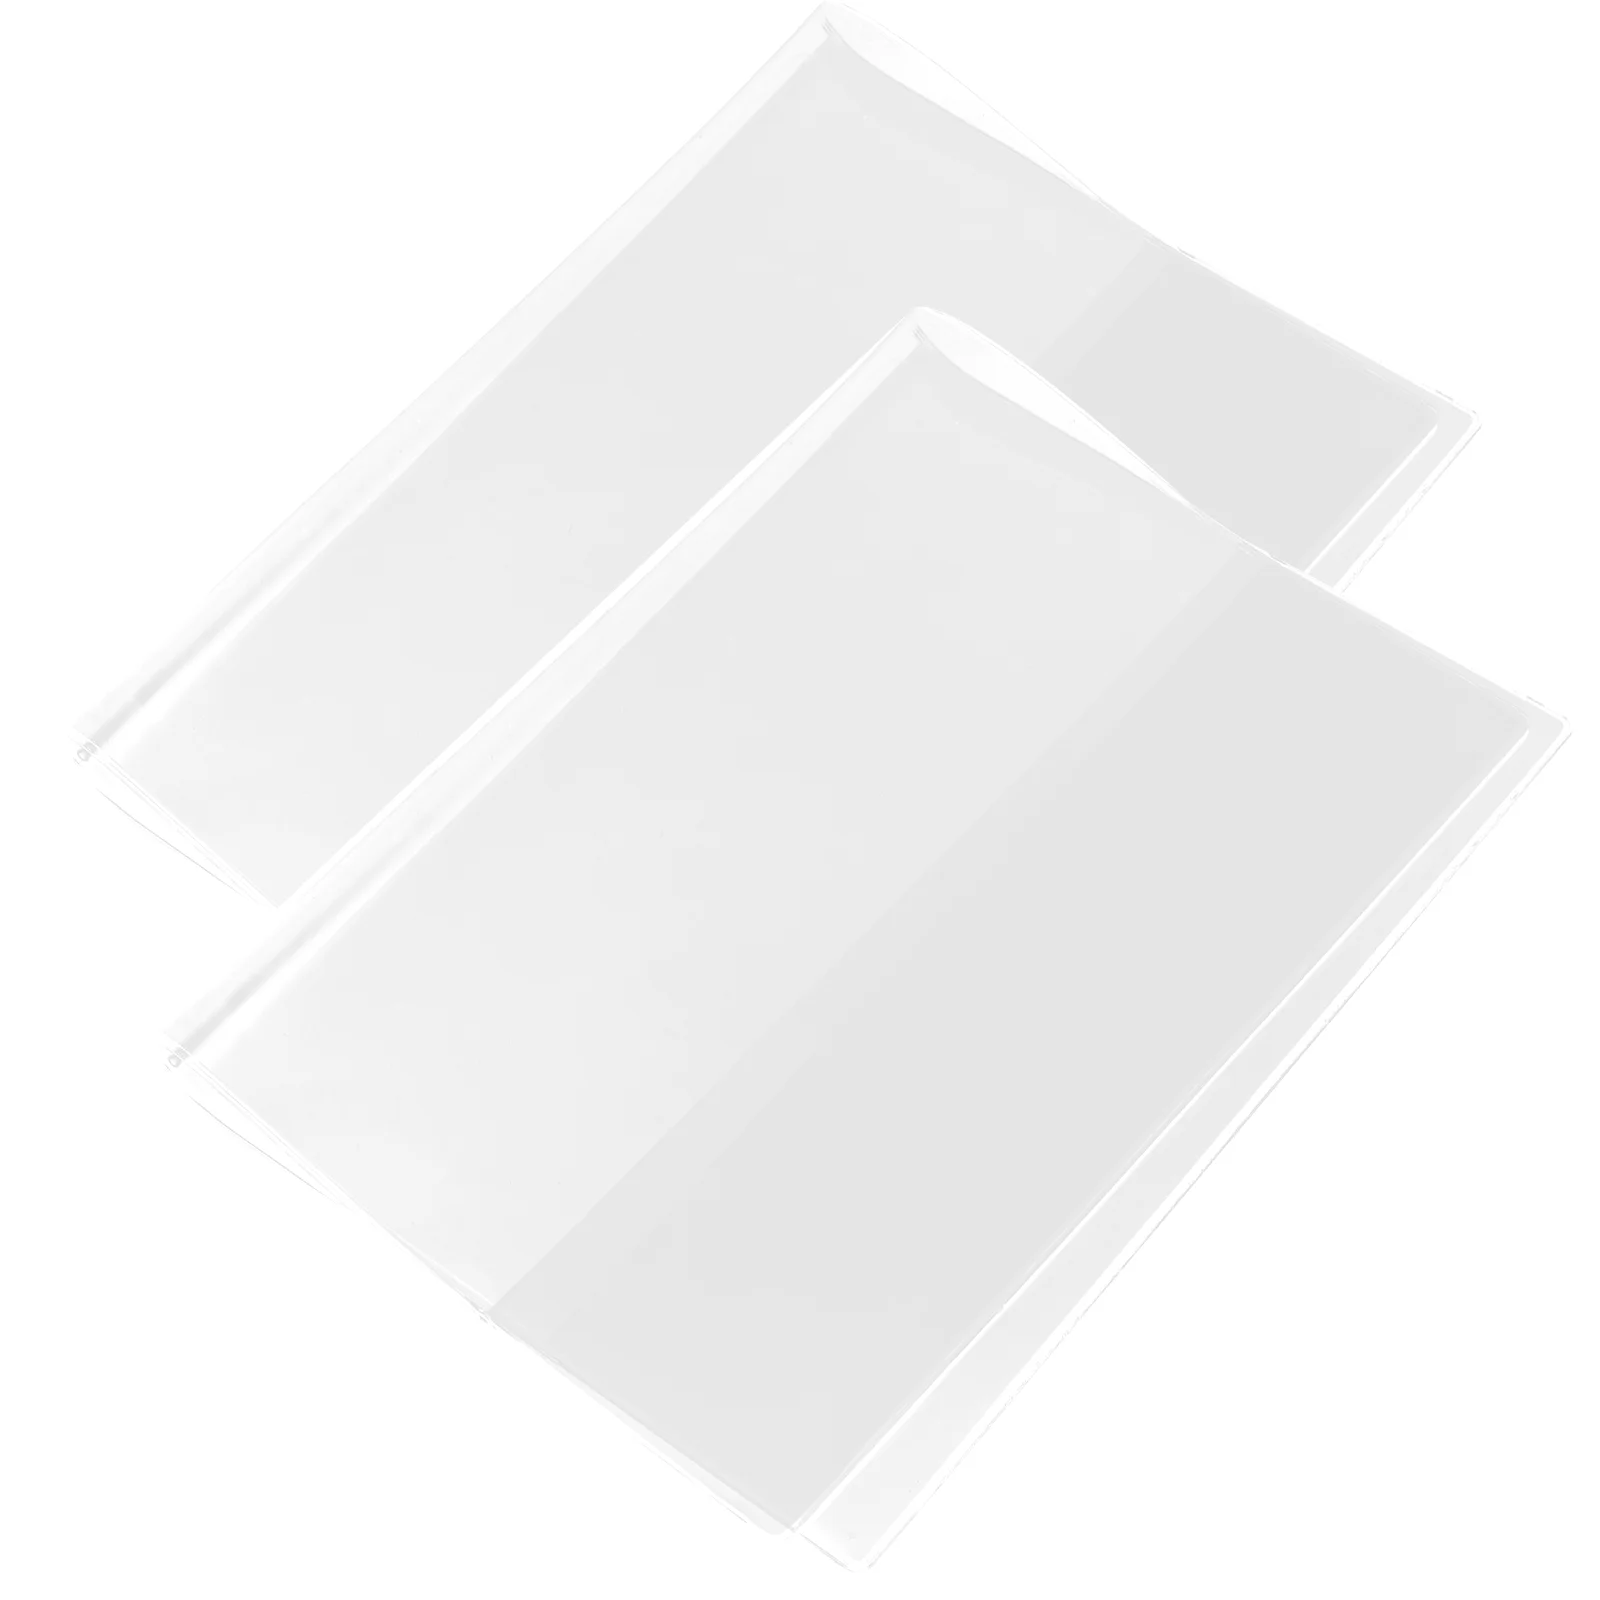 

Чехол-книжка прозрачная защитная пленка для блокнота для скрапбукинга защитный чехол для блокнота анти-обложки бумажная тетрадь для книг A5